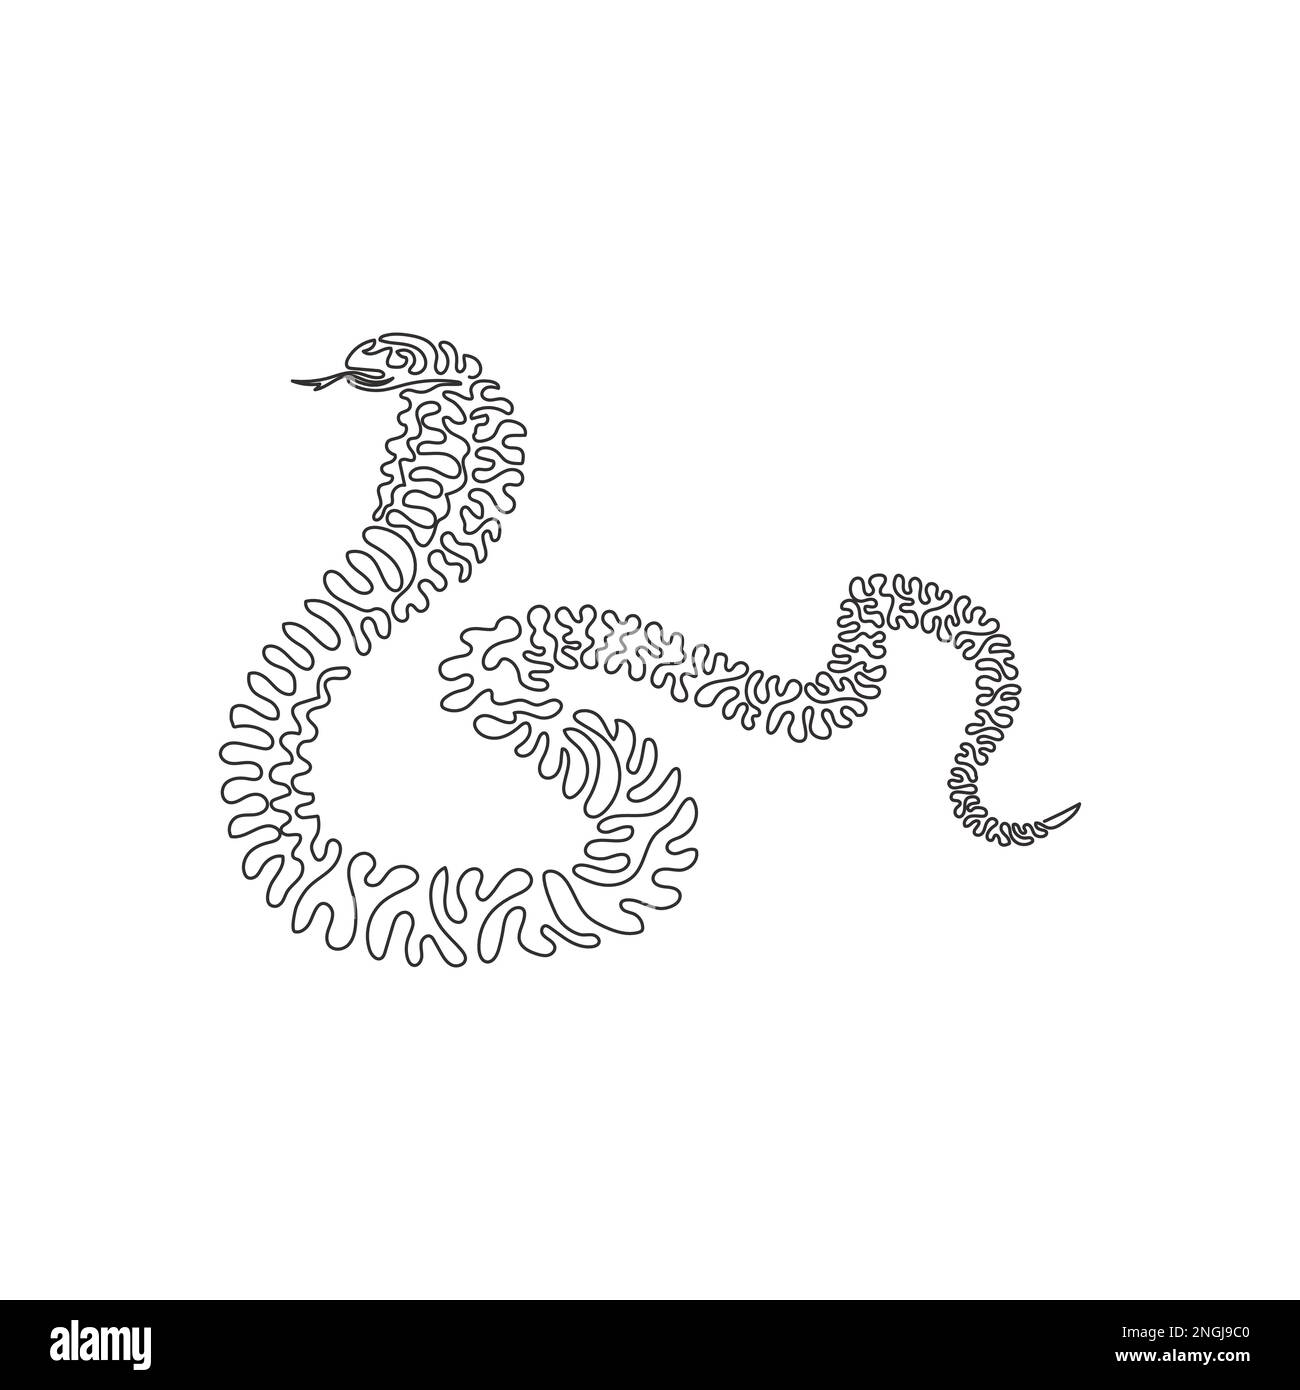 Le dessin d'une seule ligne de courbure d'un cobra élargit les côtes du cou pour former une capuche. Dessin de ligne continue illustration vectorielle d'un cobra venimeux Illustration de Vecteur